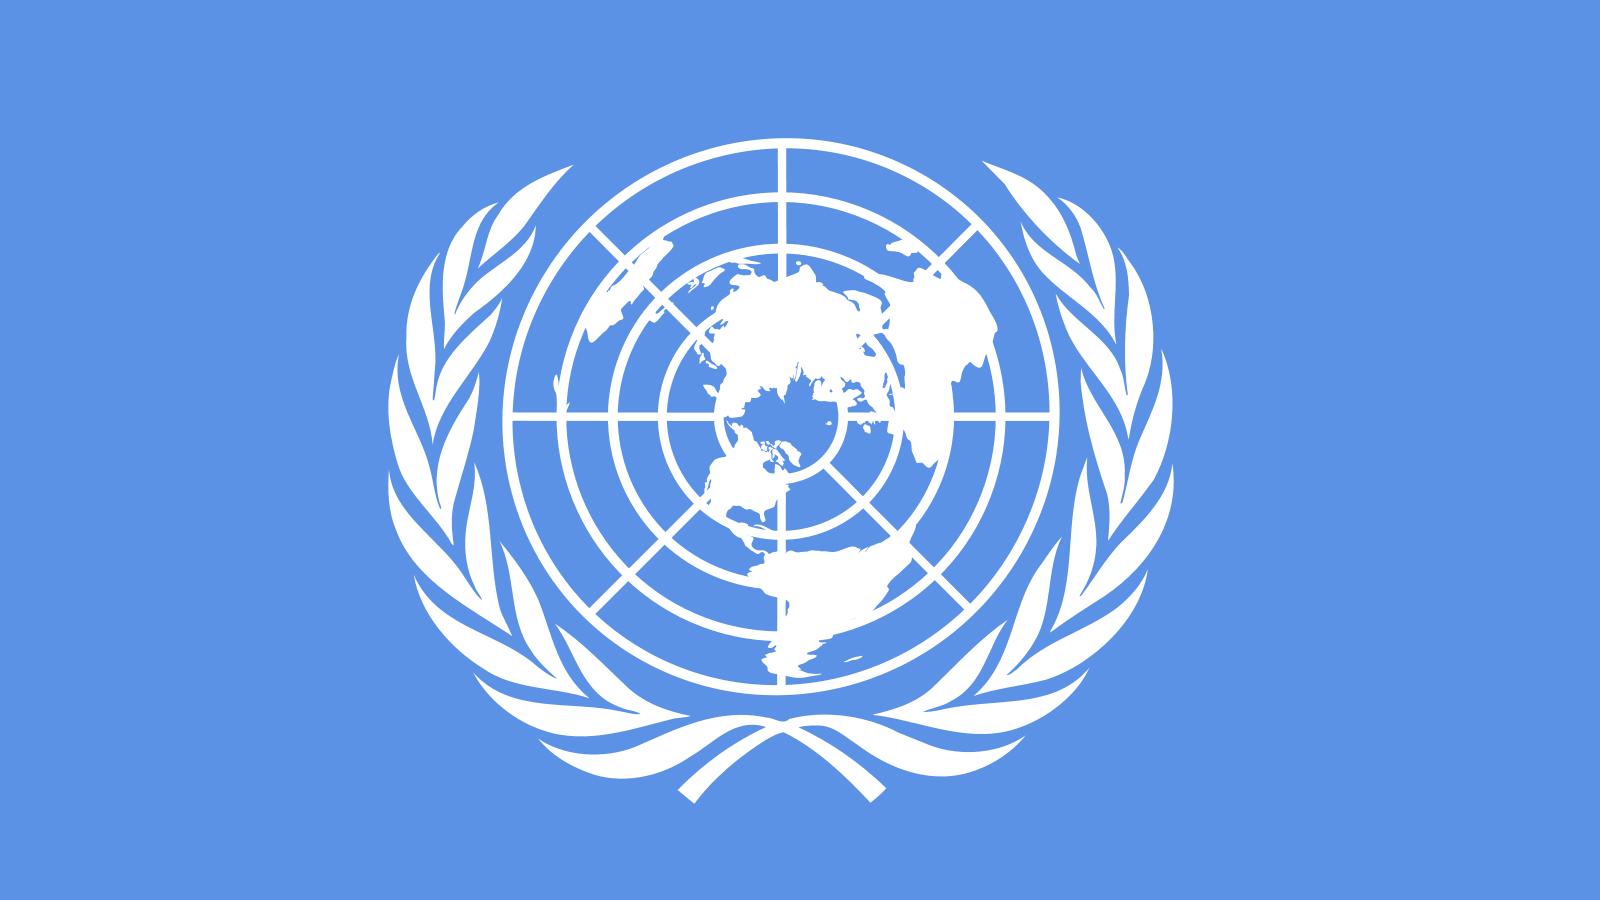 Αμμόχωστος: Ο ΟΗΕ δεν έχει καμία ενημέρωση για άνοιγμα της κλειστής πόλης υπό τη διοίκηση του